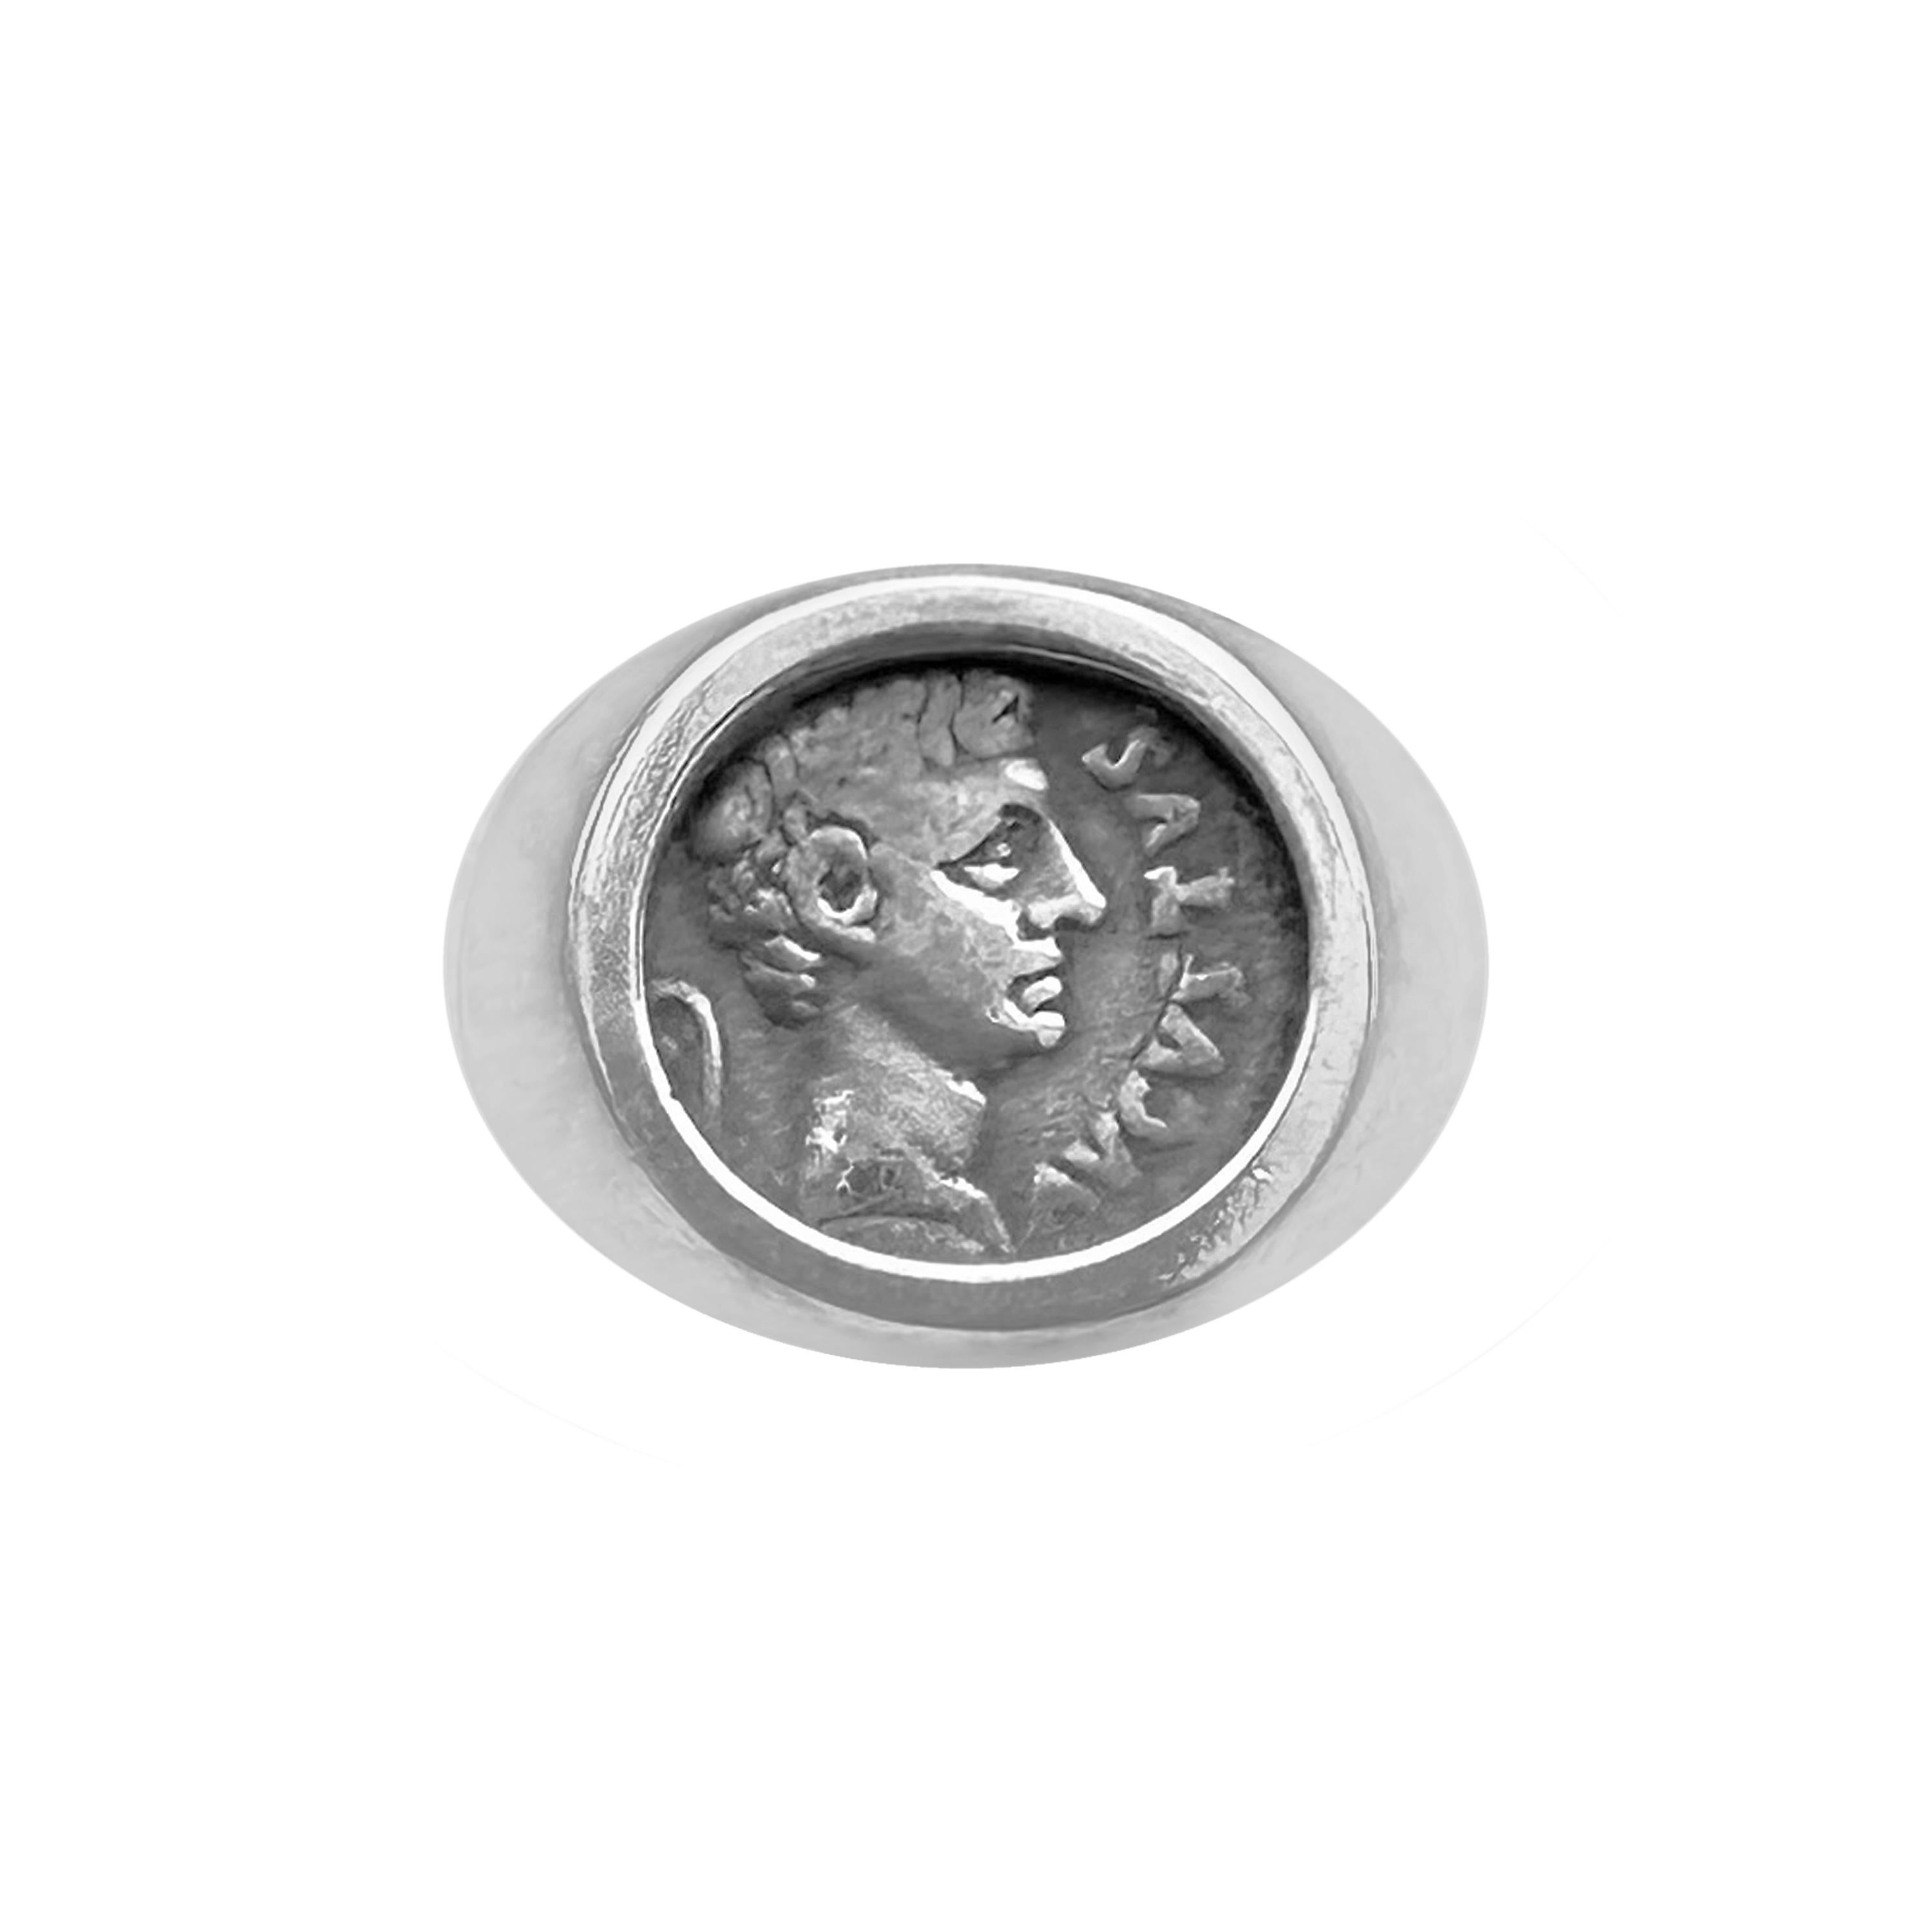 Genuine bague romaine ancienne de 27 av. J.-C. à 14 apr. J.-C. représentant l'empereur Auguste